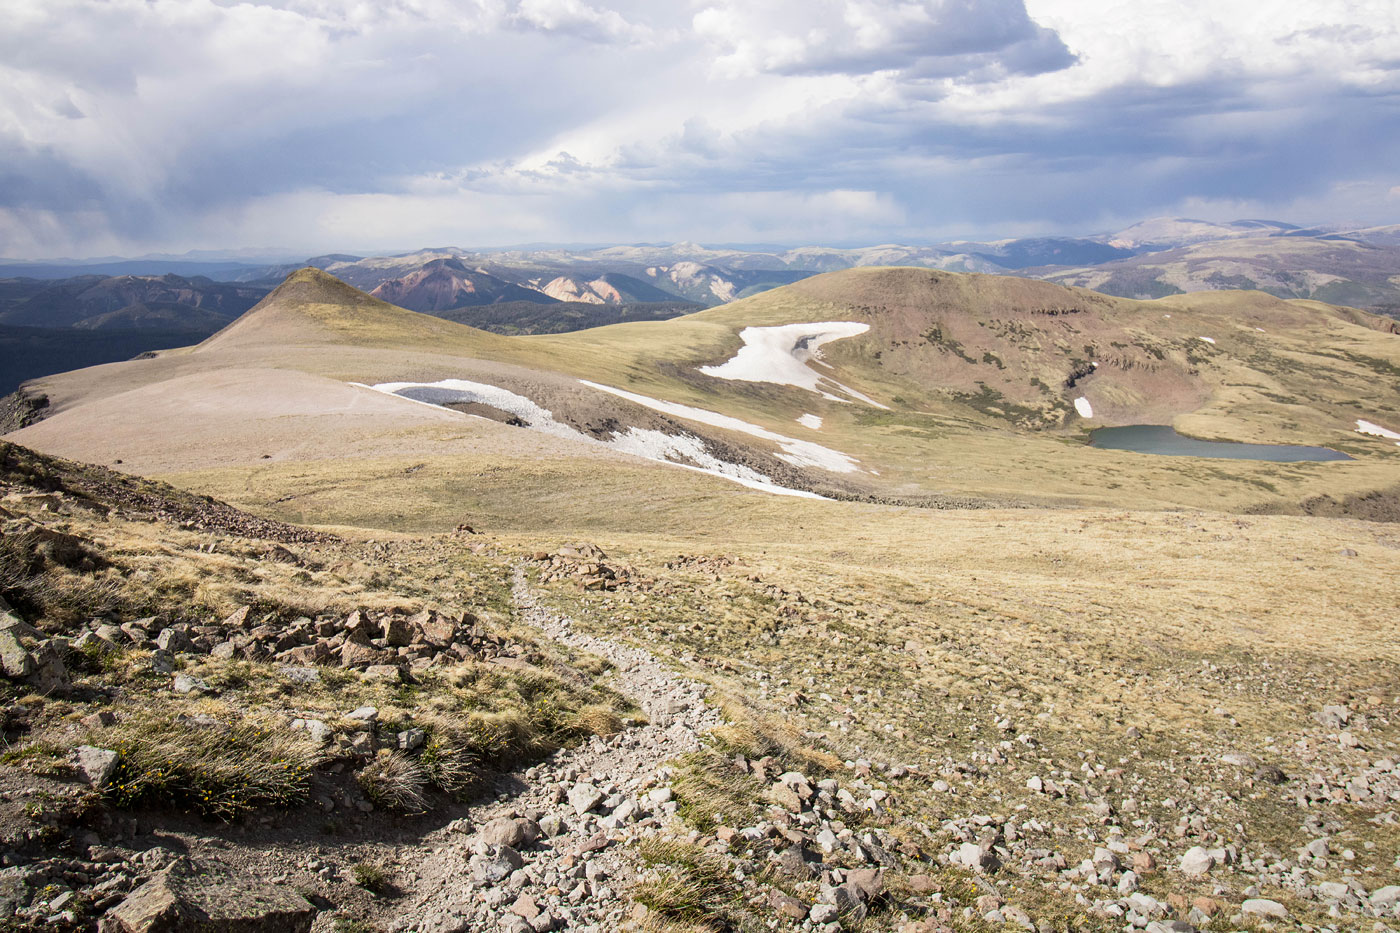 Hike Conejos Peak Loop in Rio Grande National Forest, Colorado - Stav is Lost